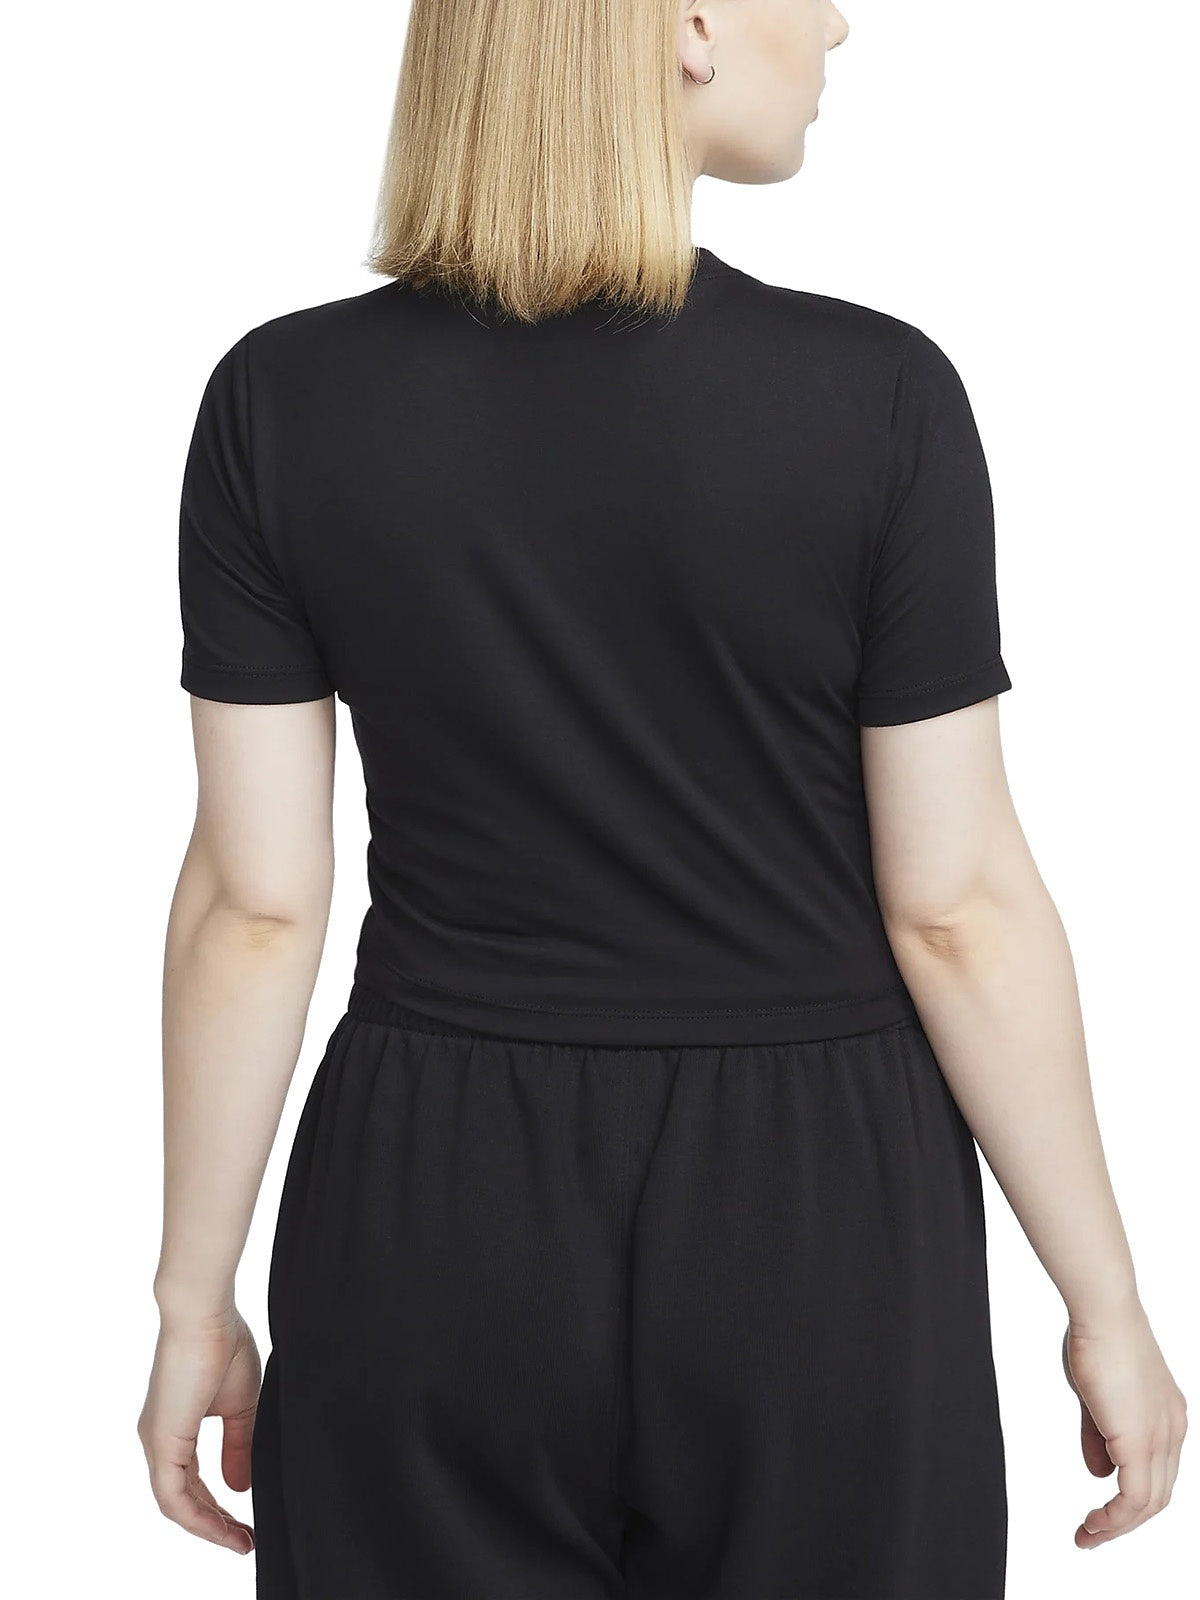 T-shirt Donna Nike - T-Shirt Corta Slim Fit Sportswear Essential - Nero